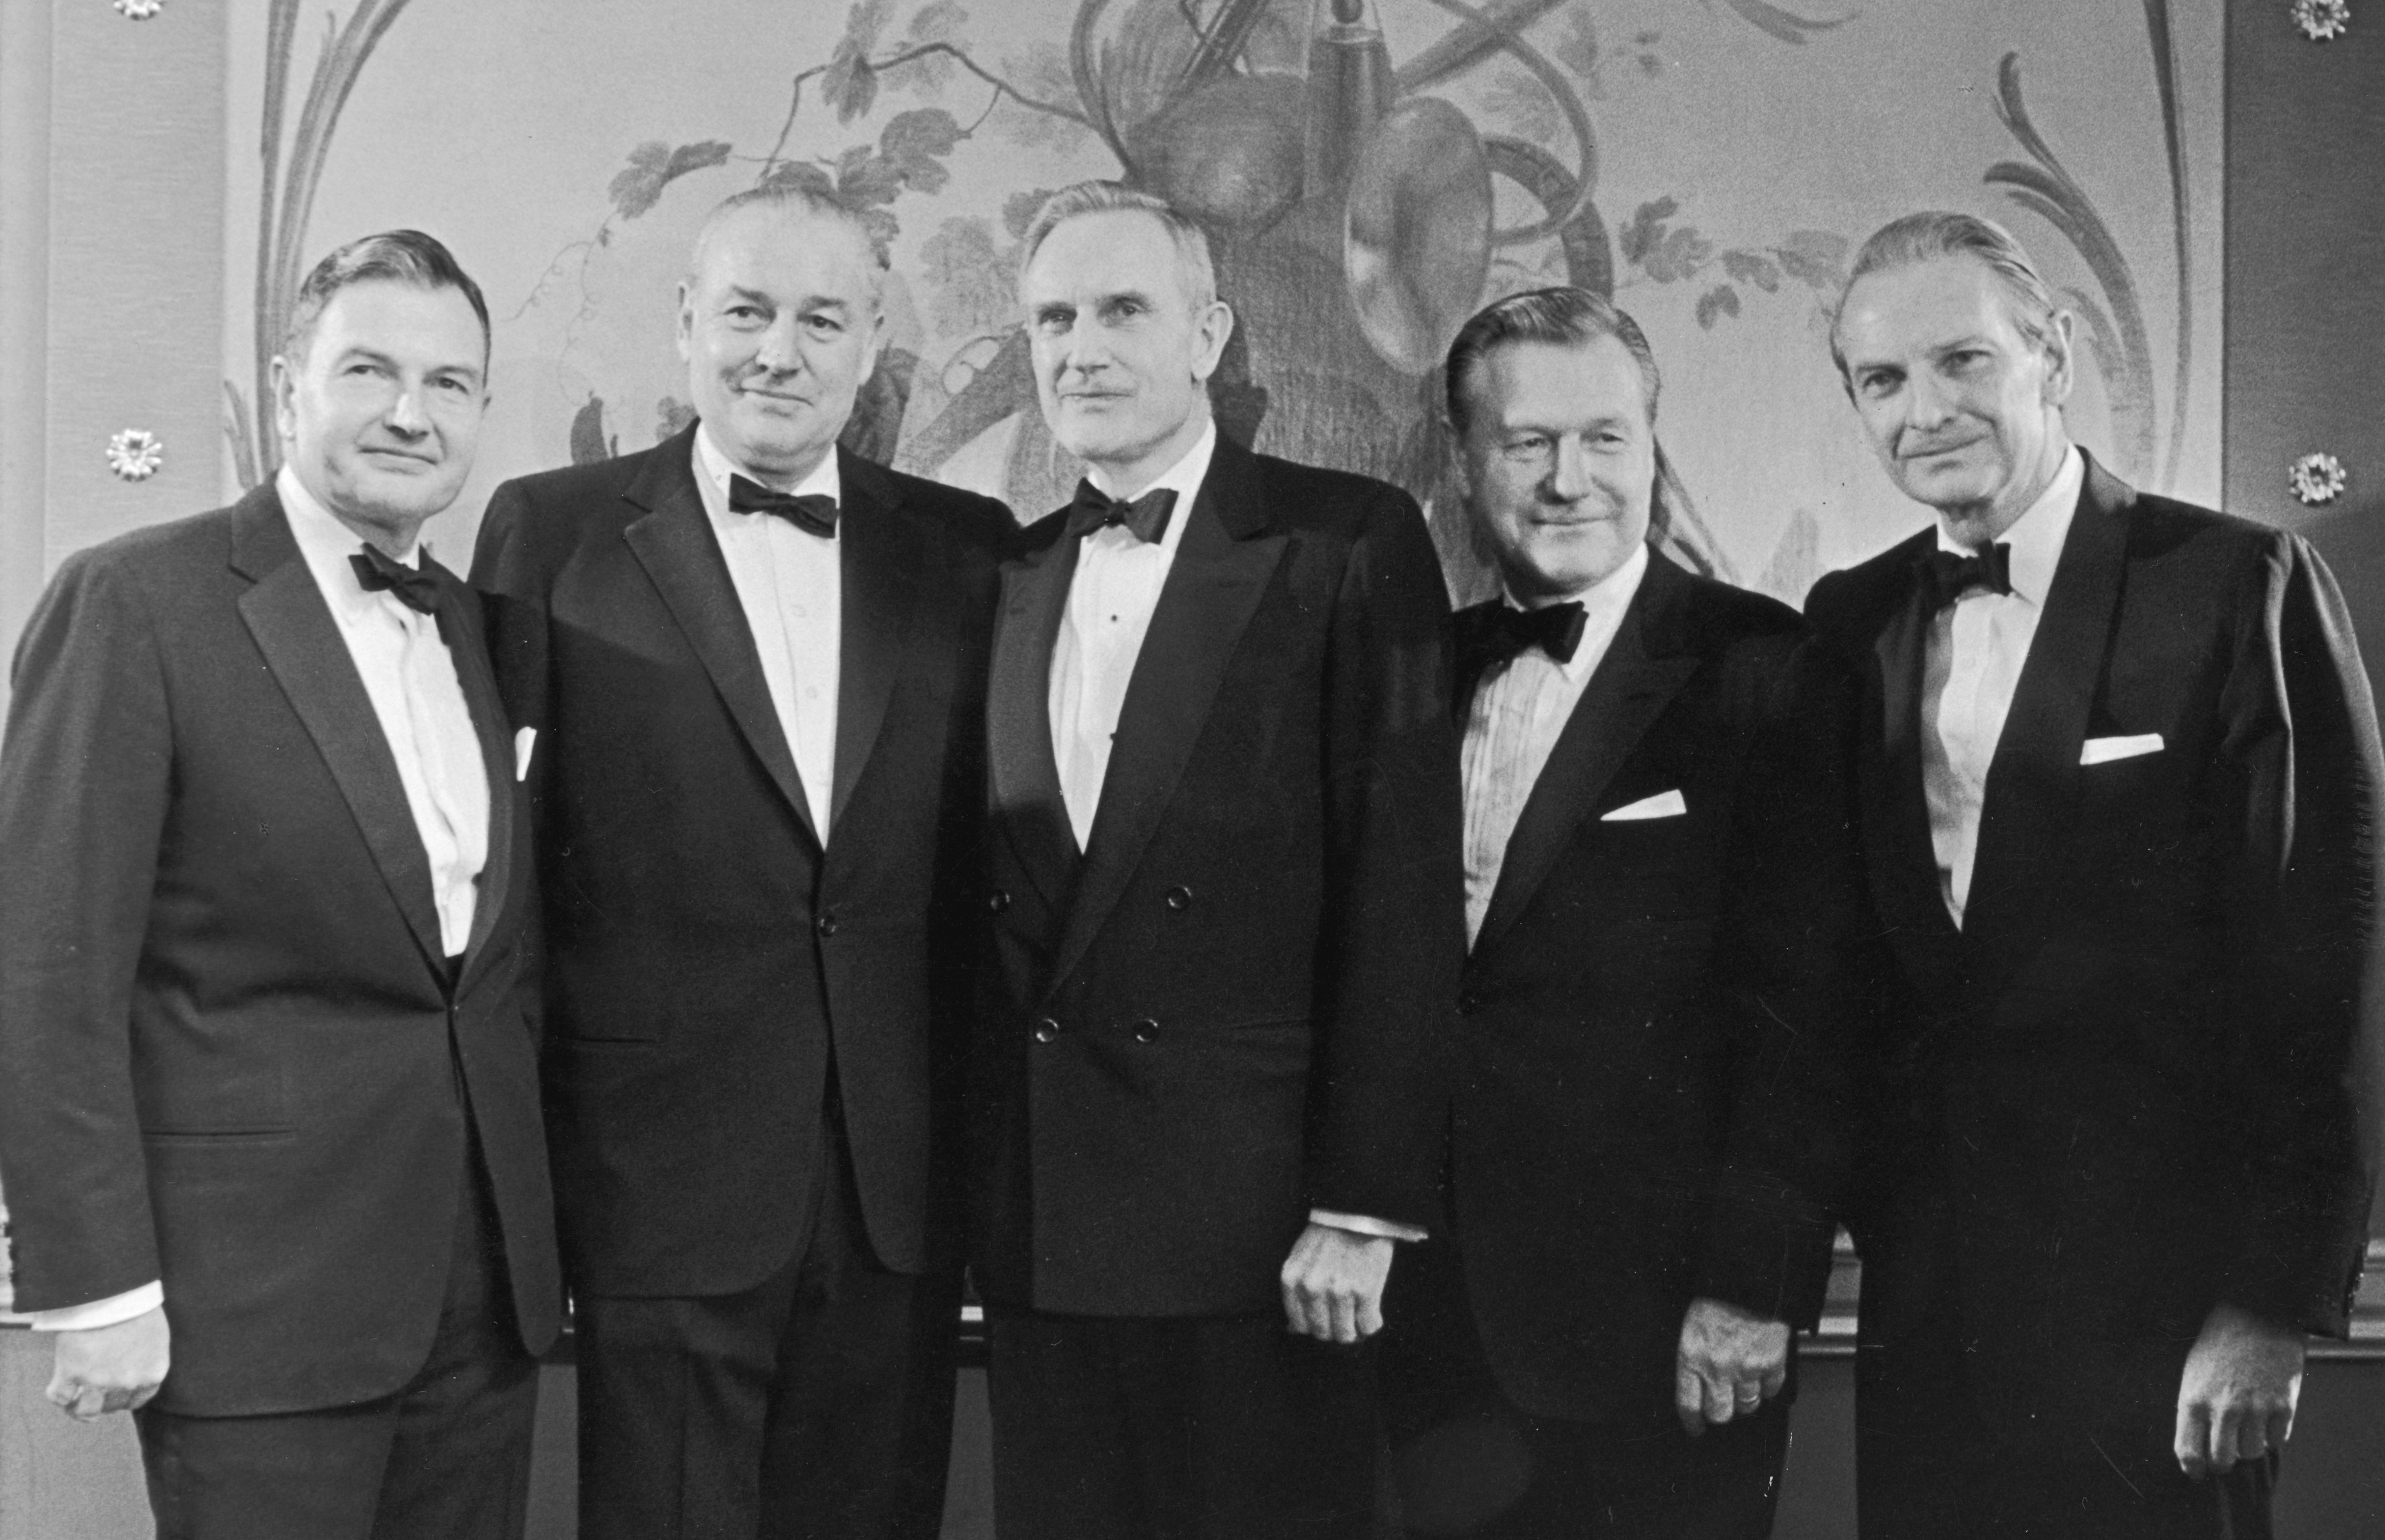 Члены семьи Рокфеллер: Дэвид,&nbsp;Уинтроп, Джон Д. Рокфеллер III, Нельсон и Лоранс